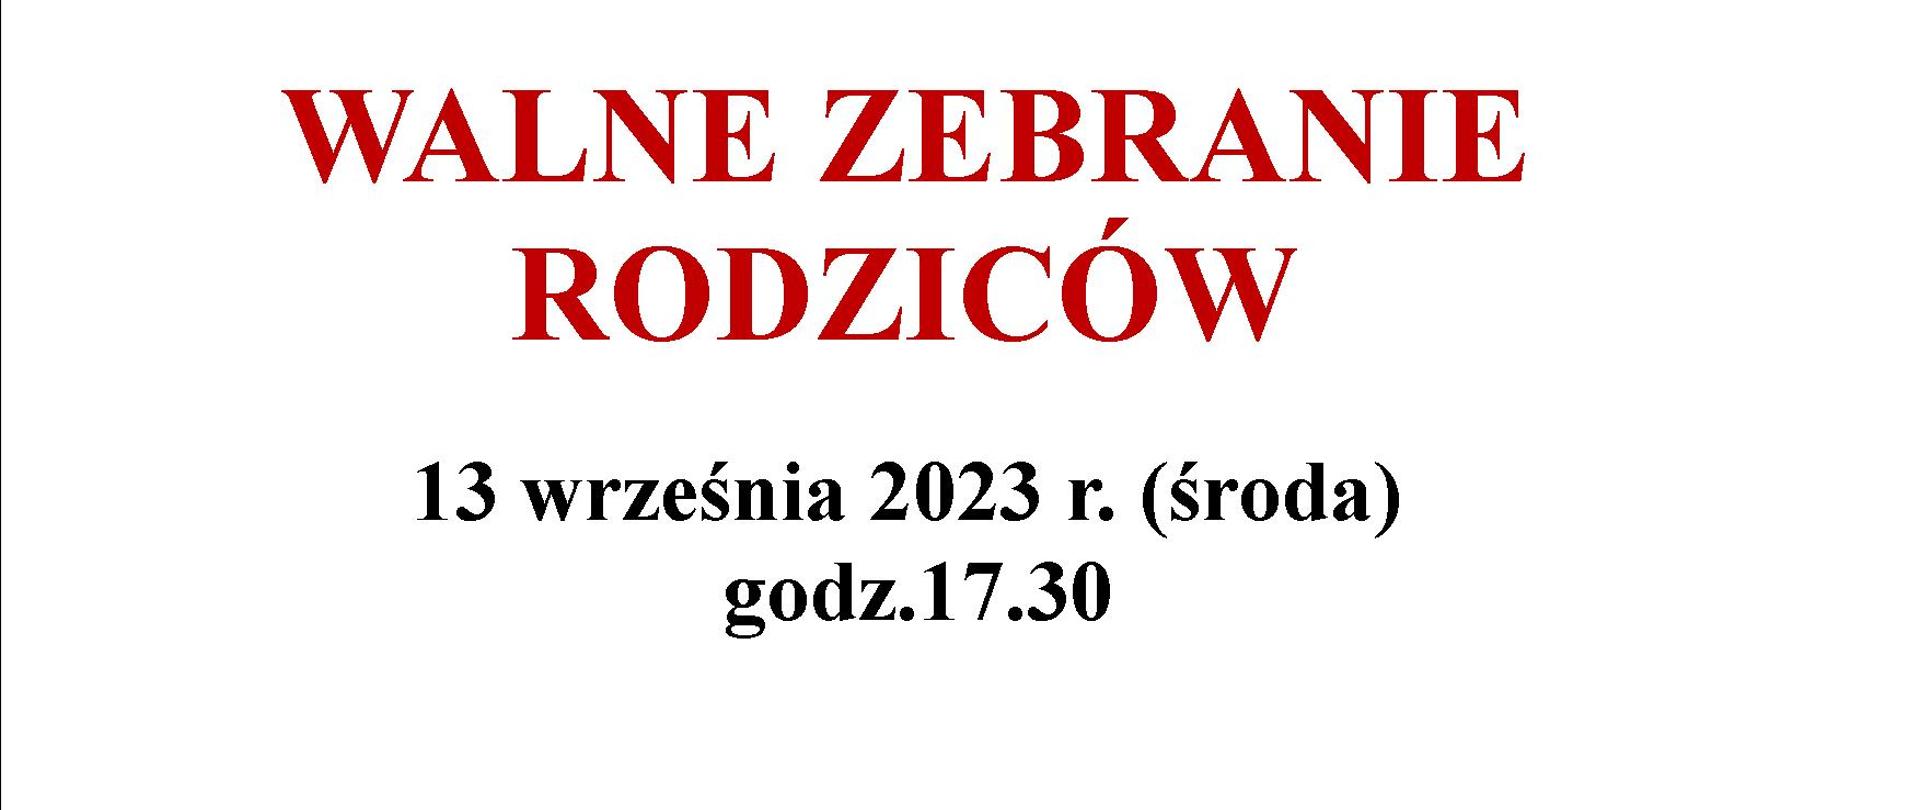 Dyrekcja Państwowej Szkoły Muzycznej w Oświęcimiu zaprasza na walne zebranie rodziców 13 września 2023 r. w sali koncertowej.